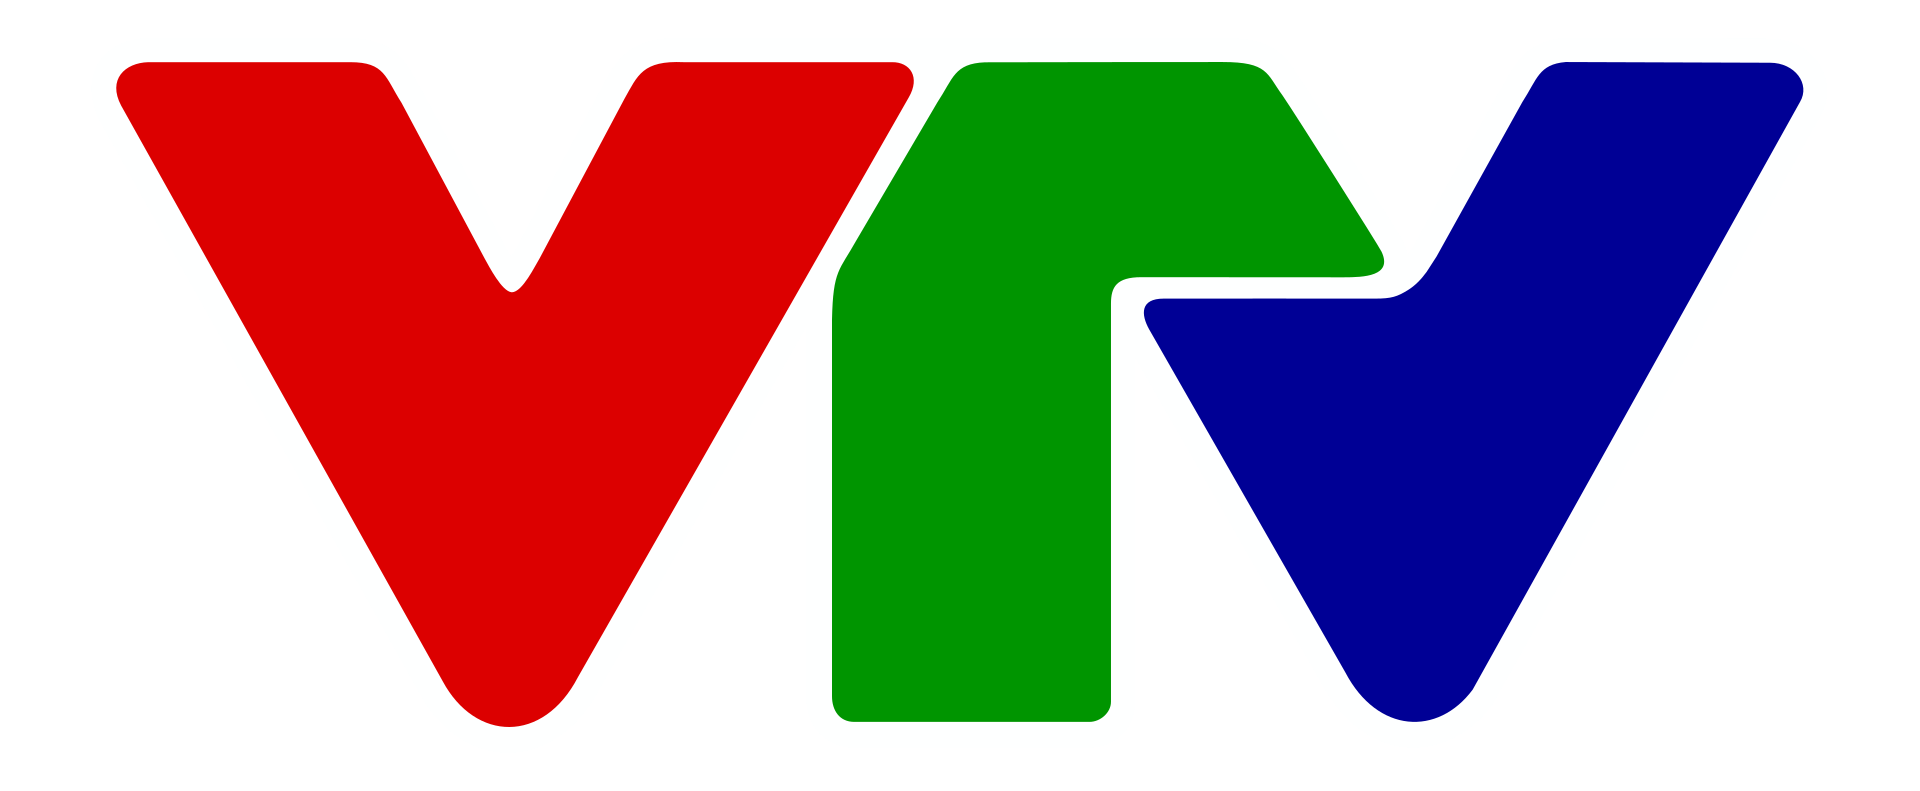 Vietnam Television logo from 2013.svg